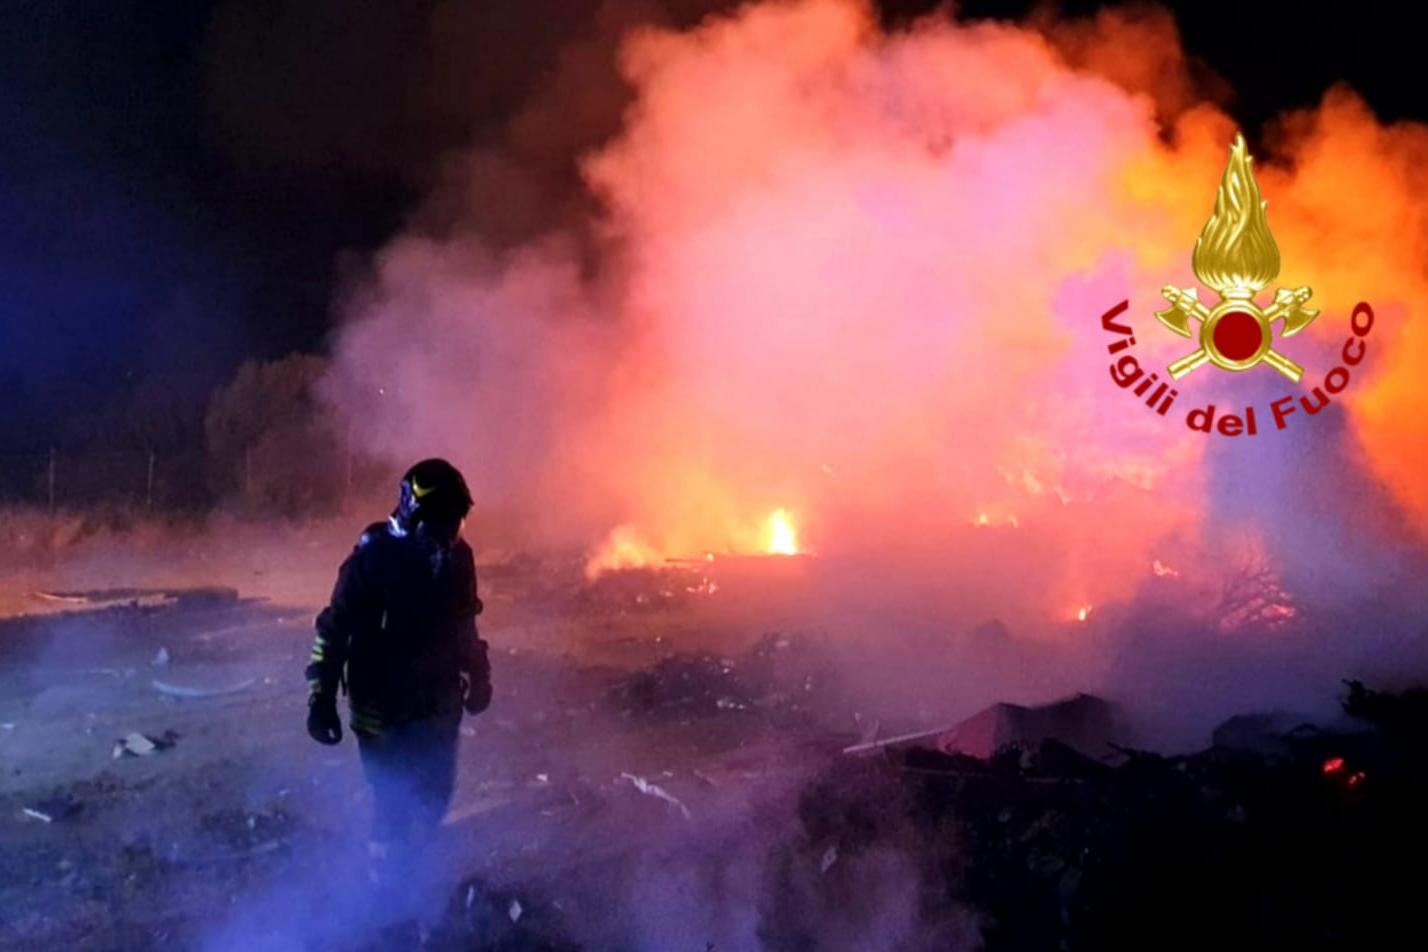 Incendio nella notte a Flumini di Quartu: in fiamme masserizie e vegetazione